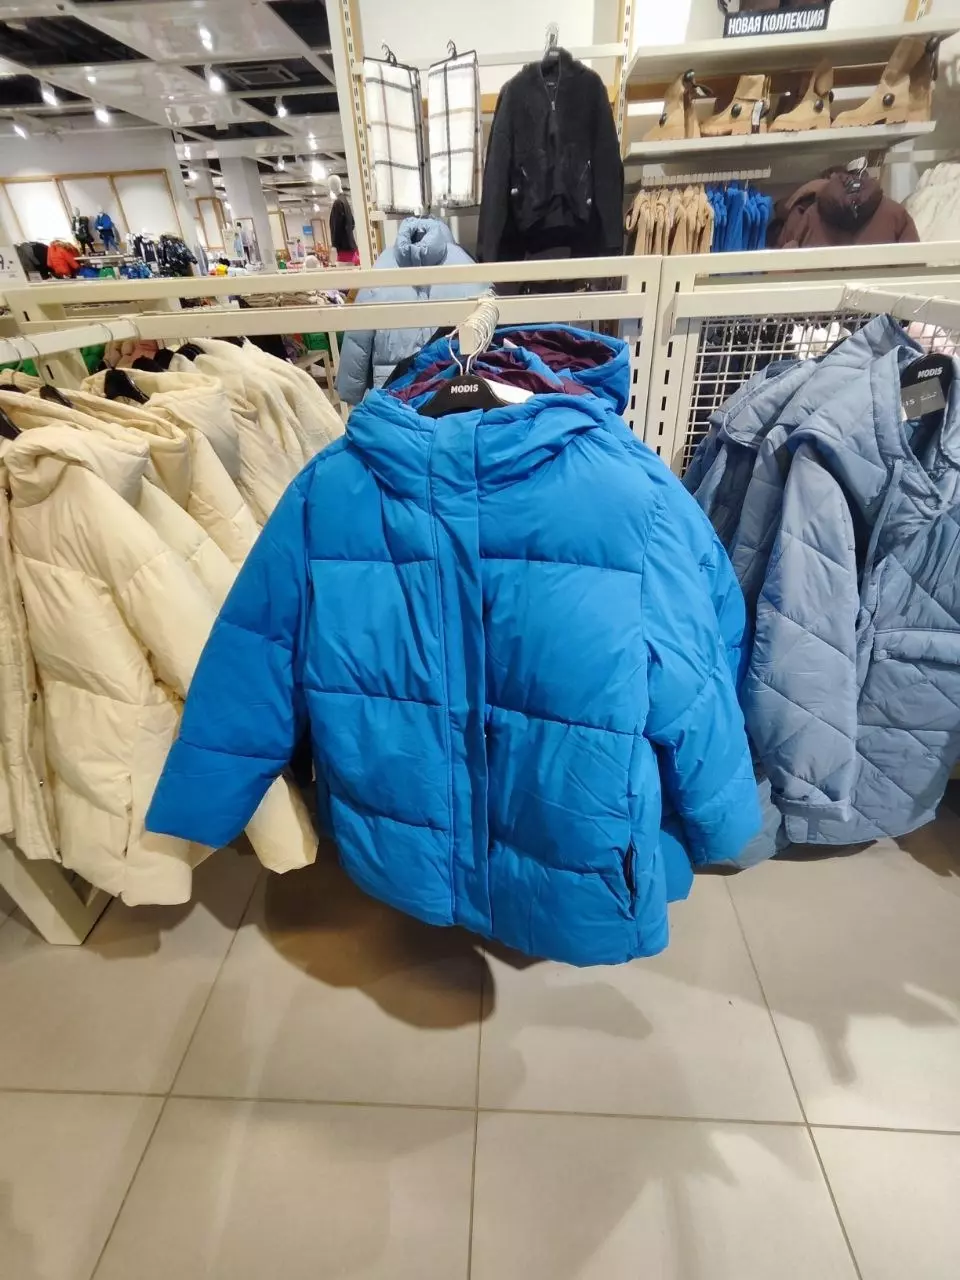 Ассортимент курток в магазине MODIS